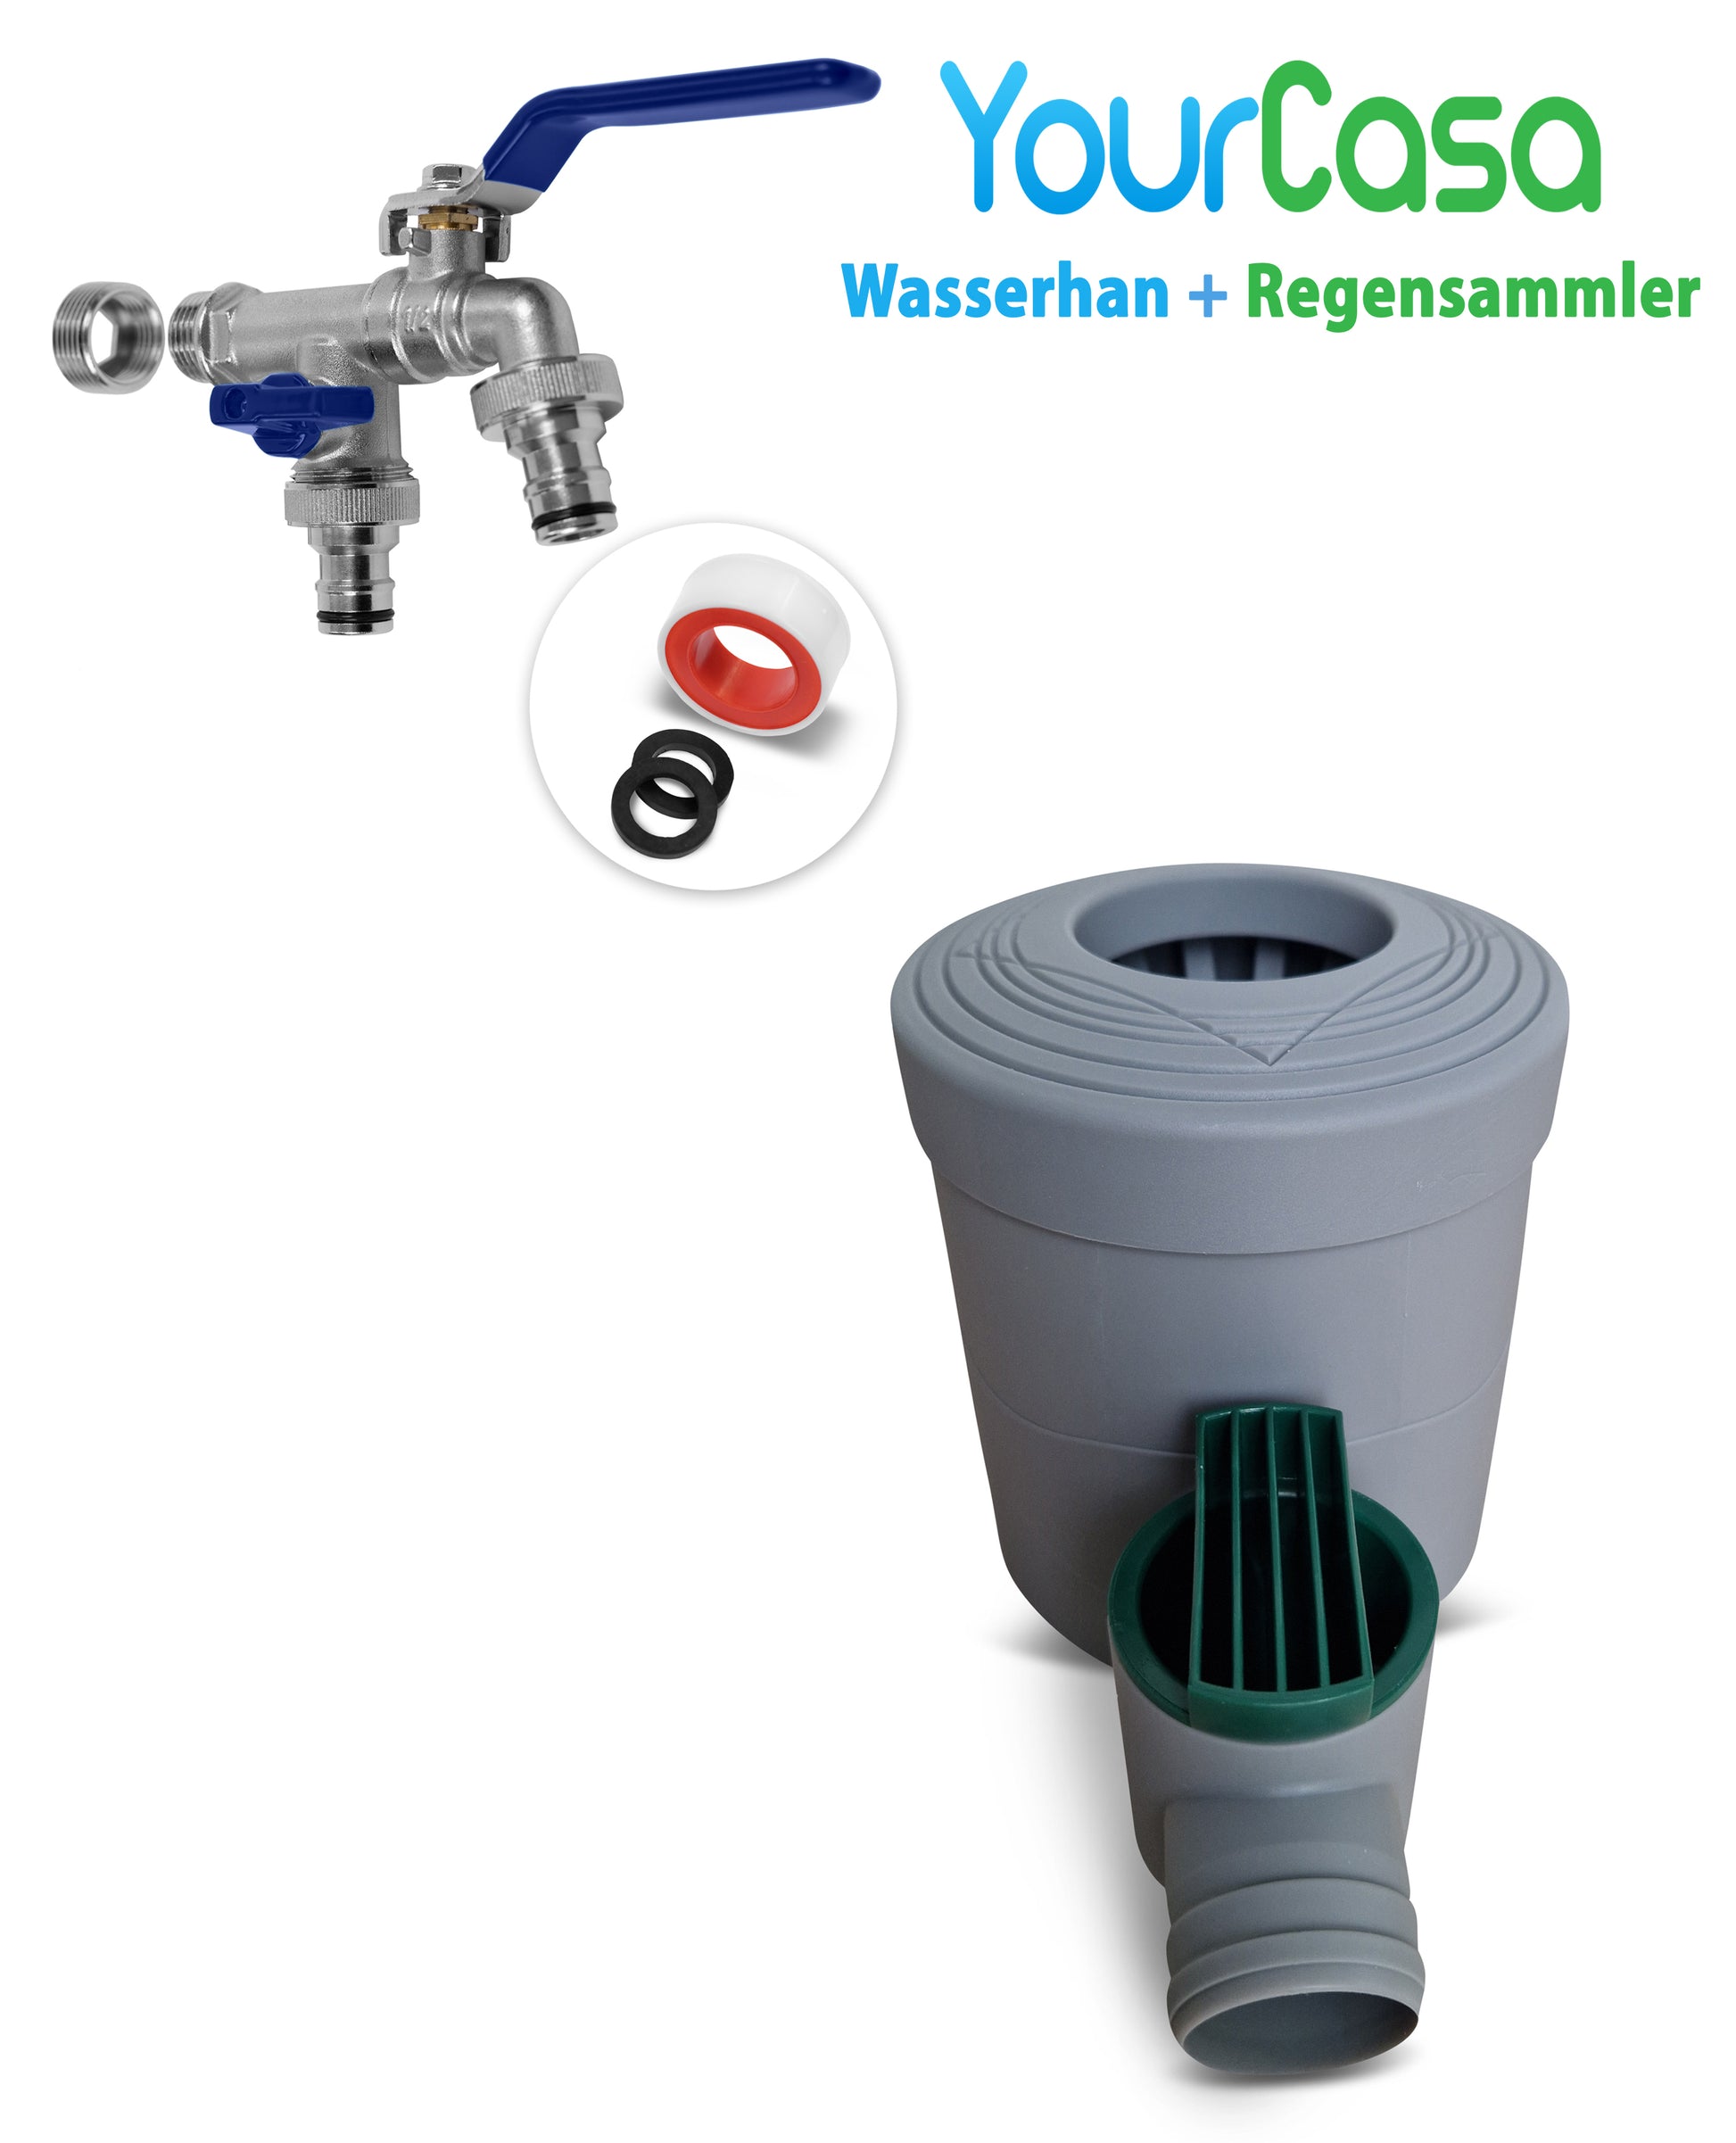 Regenwassersammelsystem mit YourCasa® Regensammler und Vorratsfass.